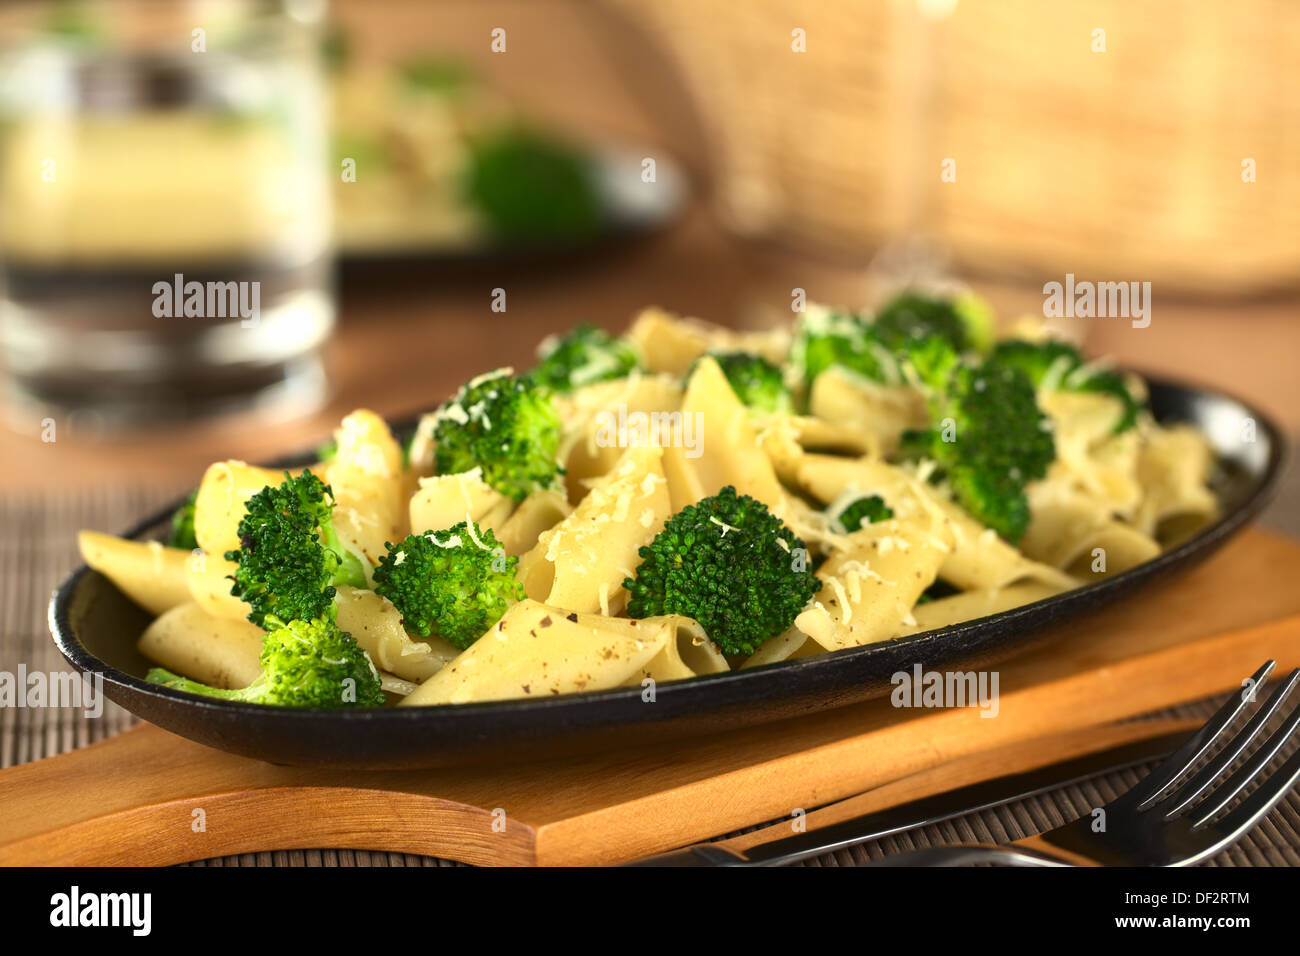 Le brocoli cuit et les pâtes au fromage fondu et de poivre sur le dessus (Selective Focus Focus, un tiers dans l'image) Banque D'Images